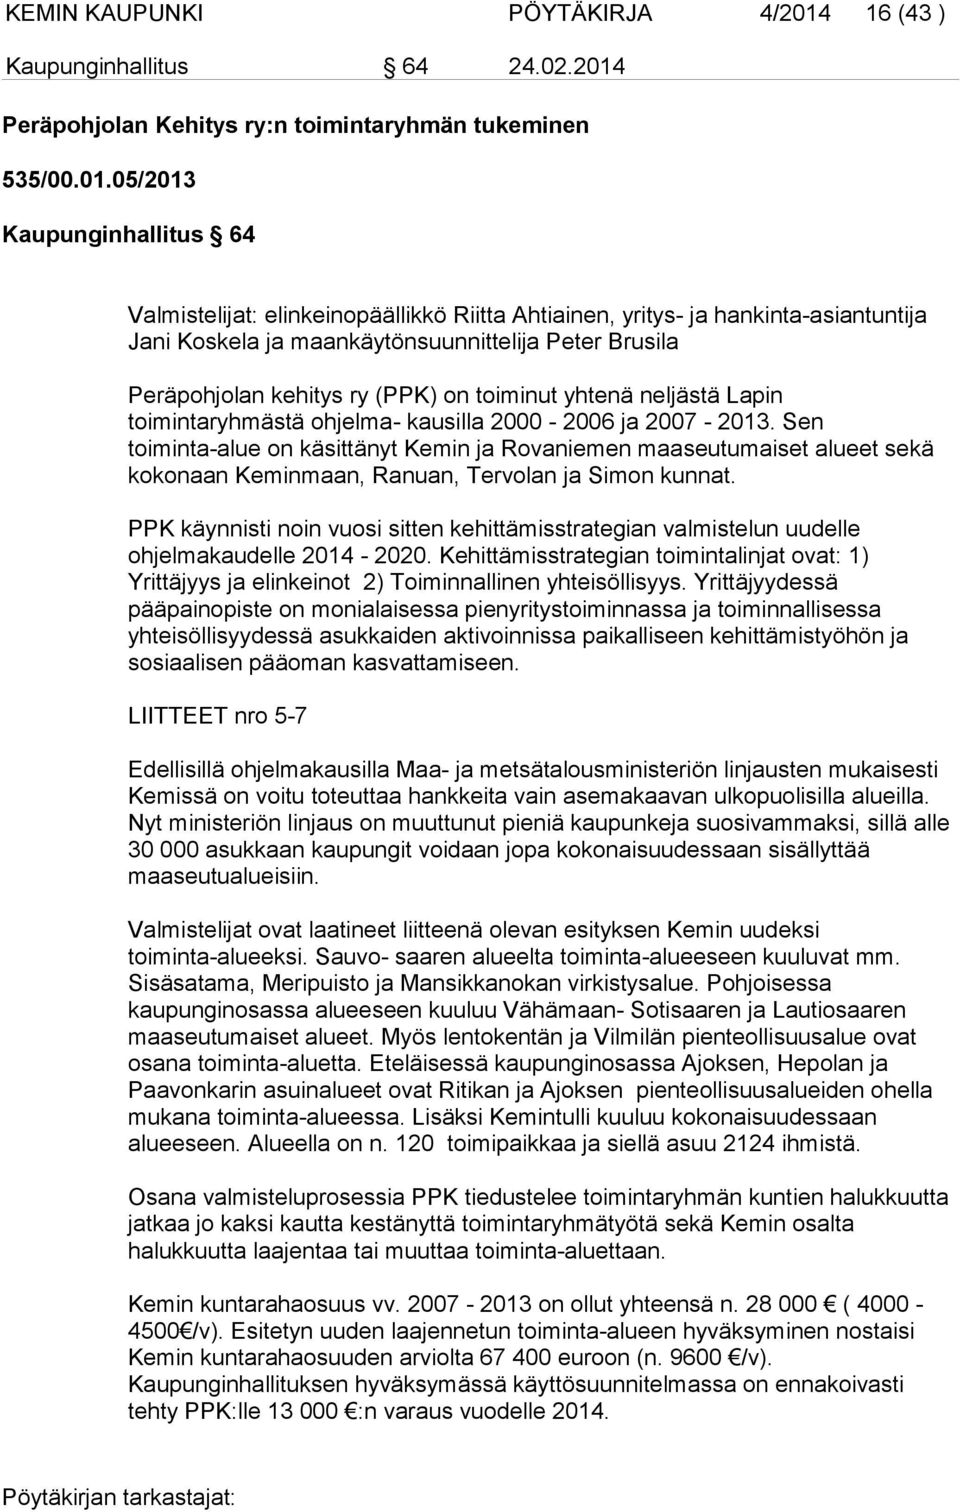 Peräpohjolan Kehitys ry:n toimintaryhmän tukeminen 535/00.01.